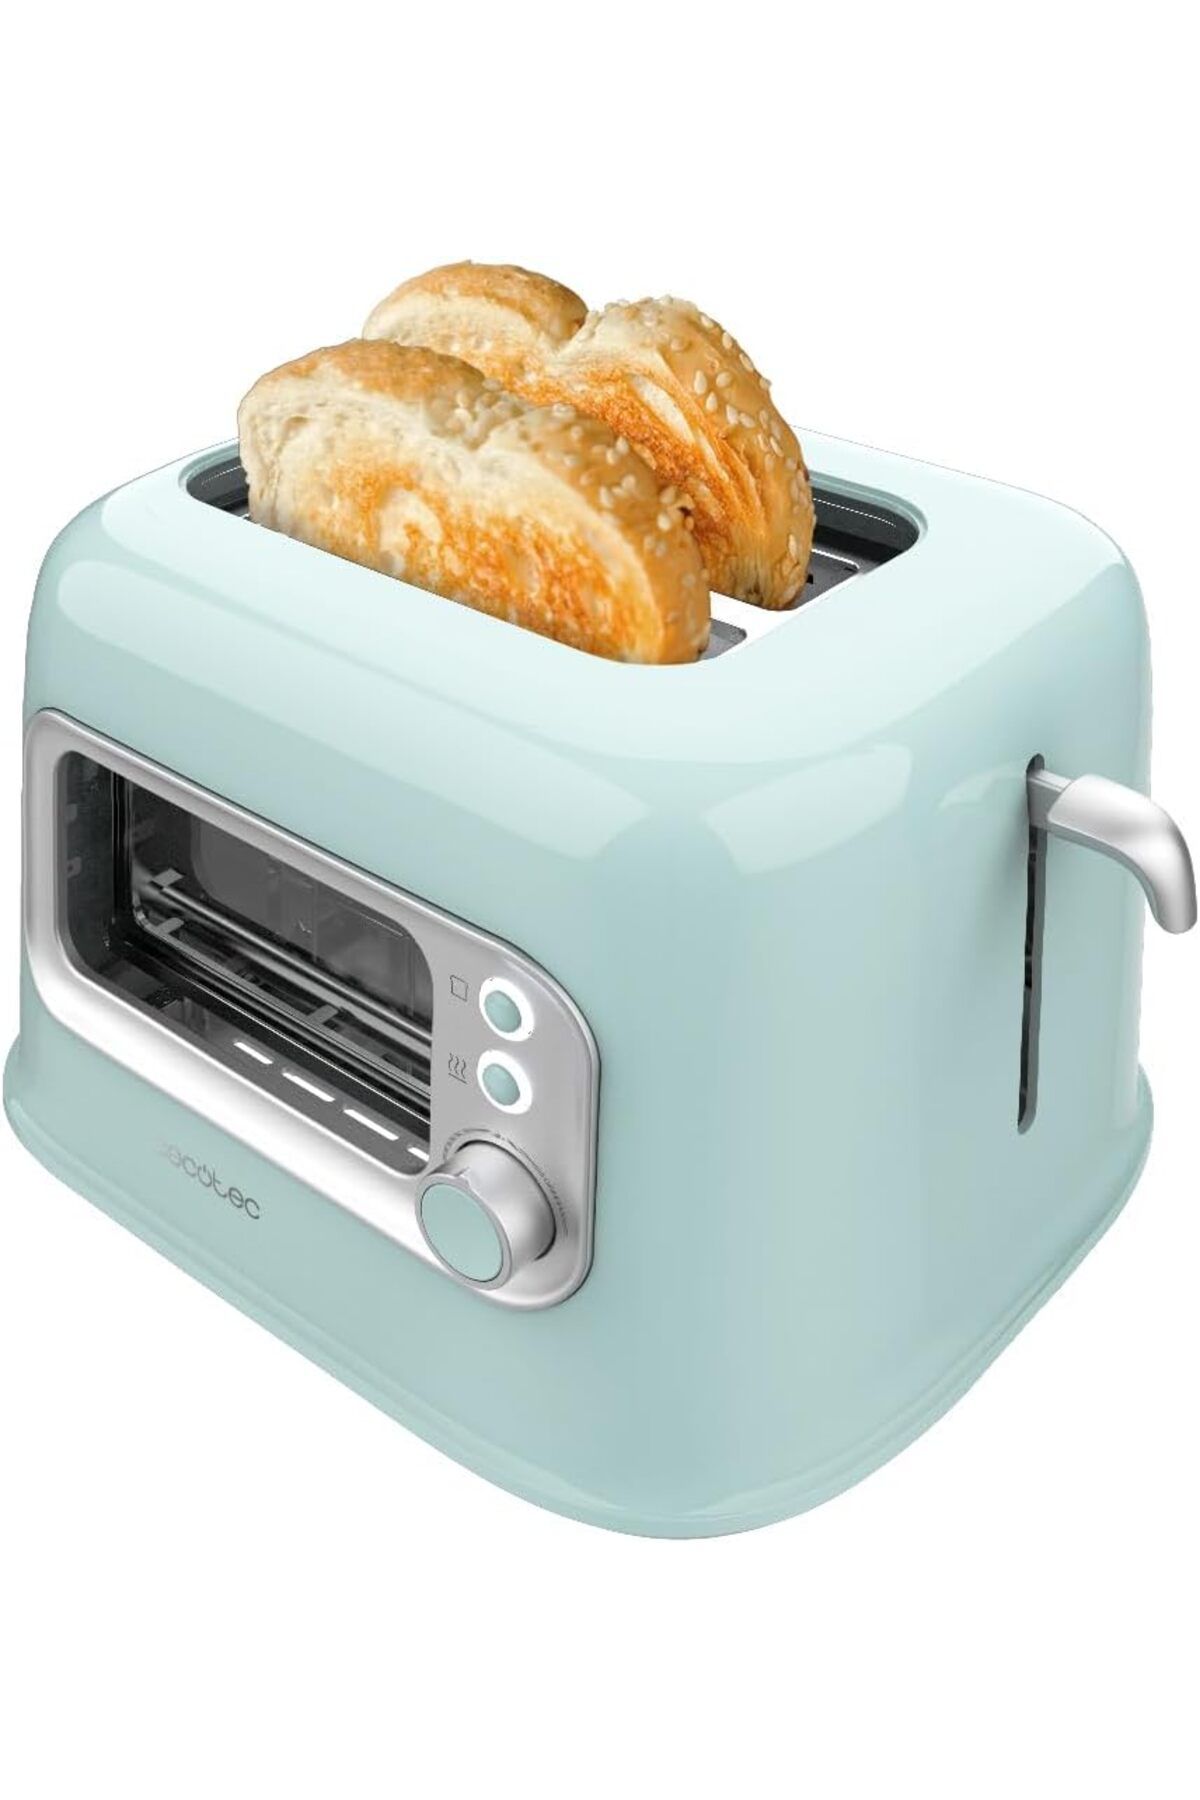 CECOTEC Ekmek Kızartma Makinesi, 2 Geniş Yuva, 5 Seviyede 700W